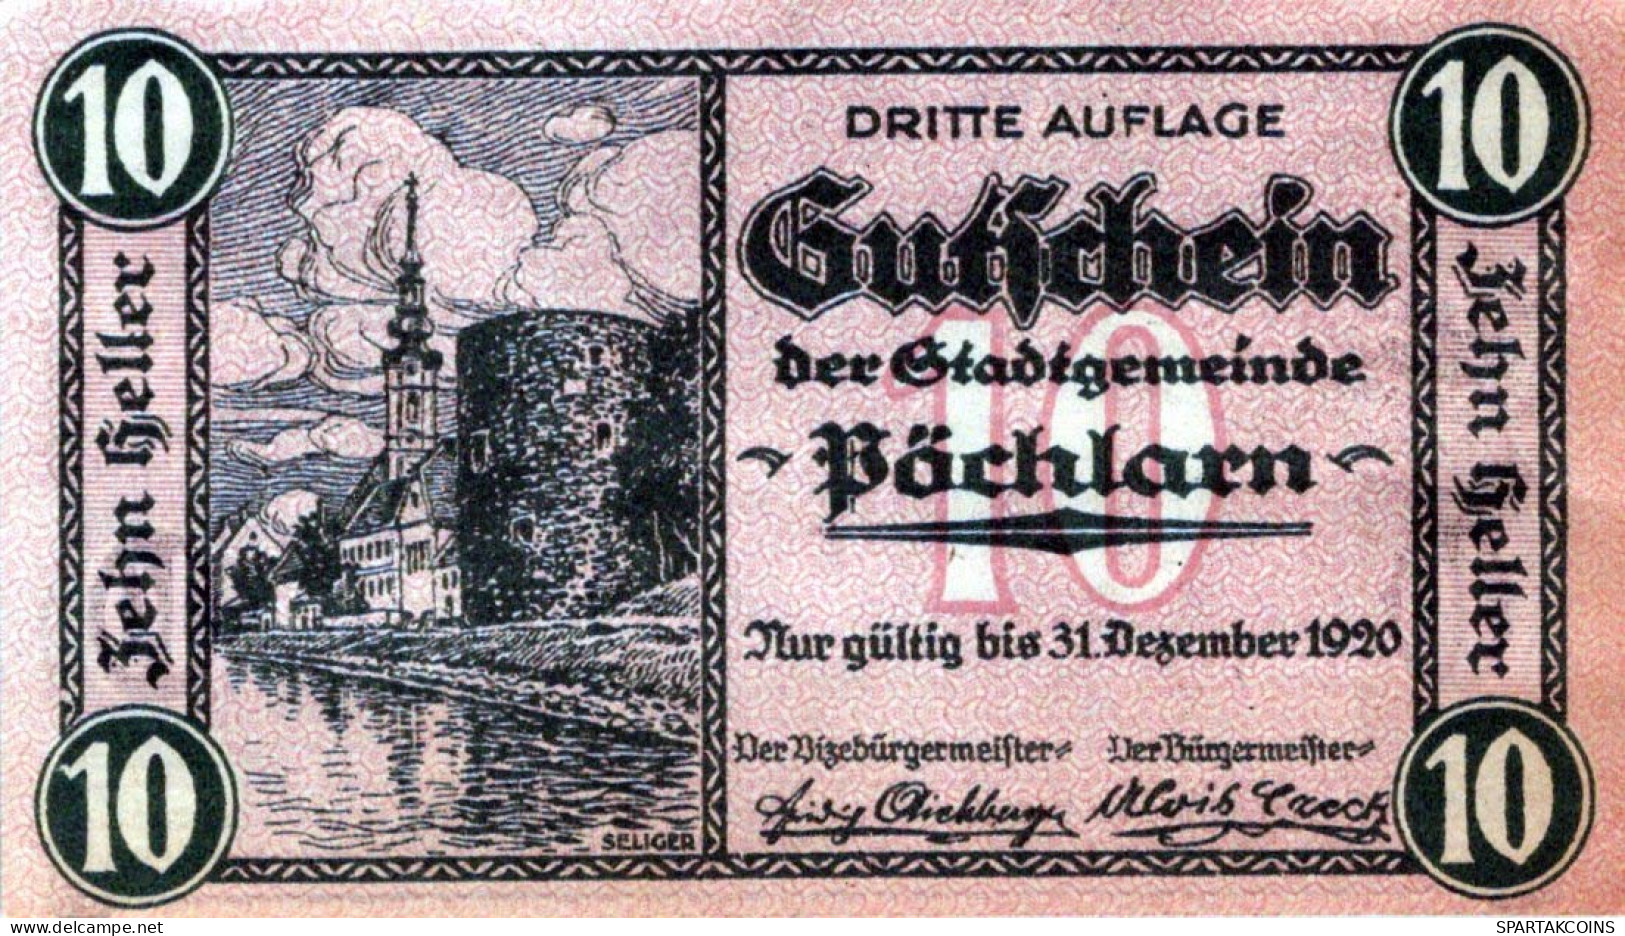 10 HELLER 1920 Stadt PoCHLARN Niedrigeren Österreich Notgeld Banknote #PE360 - Lokale Ausgaben